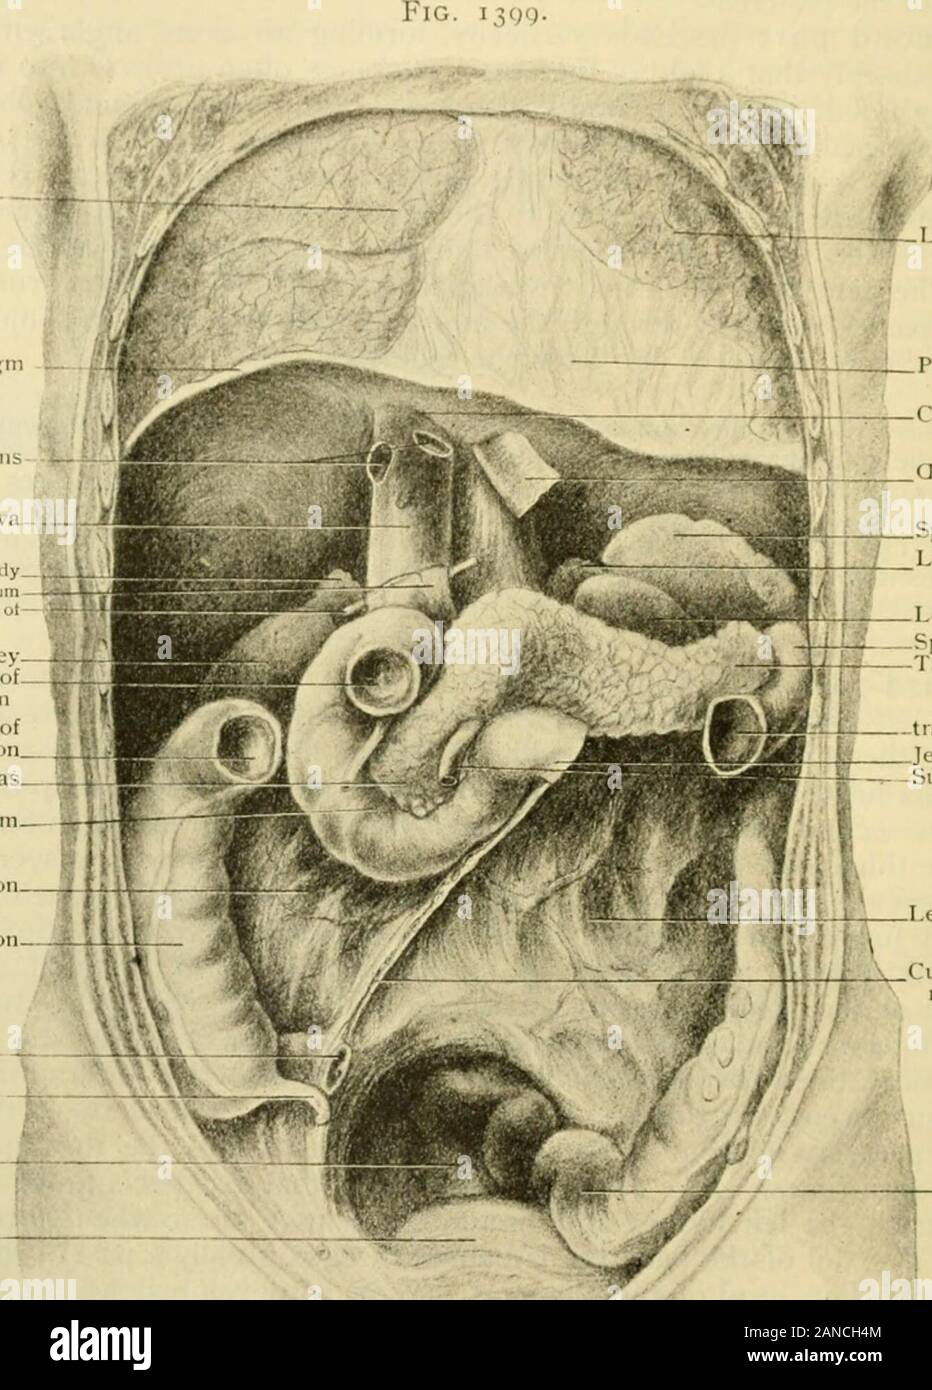 Anatomia Umana, tra cui la struttura e lo sviluppo e considerazioni di ordine pratico . ld tutti il duodeno dopo l'inizio sus-pended e fissati in modo tale che solo l'inizio è mobile. È inoltre garantito da T646 HTM UNA ANATOMIA. Il retnvperitoncal tessuto connettivo e dai riflessi peritoneale. Il shapeallows il iood dallo stomaco così come il fluido versato in esso dal pancreas liverand per accumulare e quindi agire come un S-trappola per impedire che il passaj,^e ofgases dall'intestino nello stomaco. Allo stesso tempo la minaccia sviluppodei il vaKes tende a ritardare la j)come Foto Stock